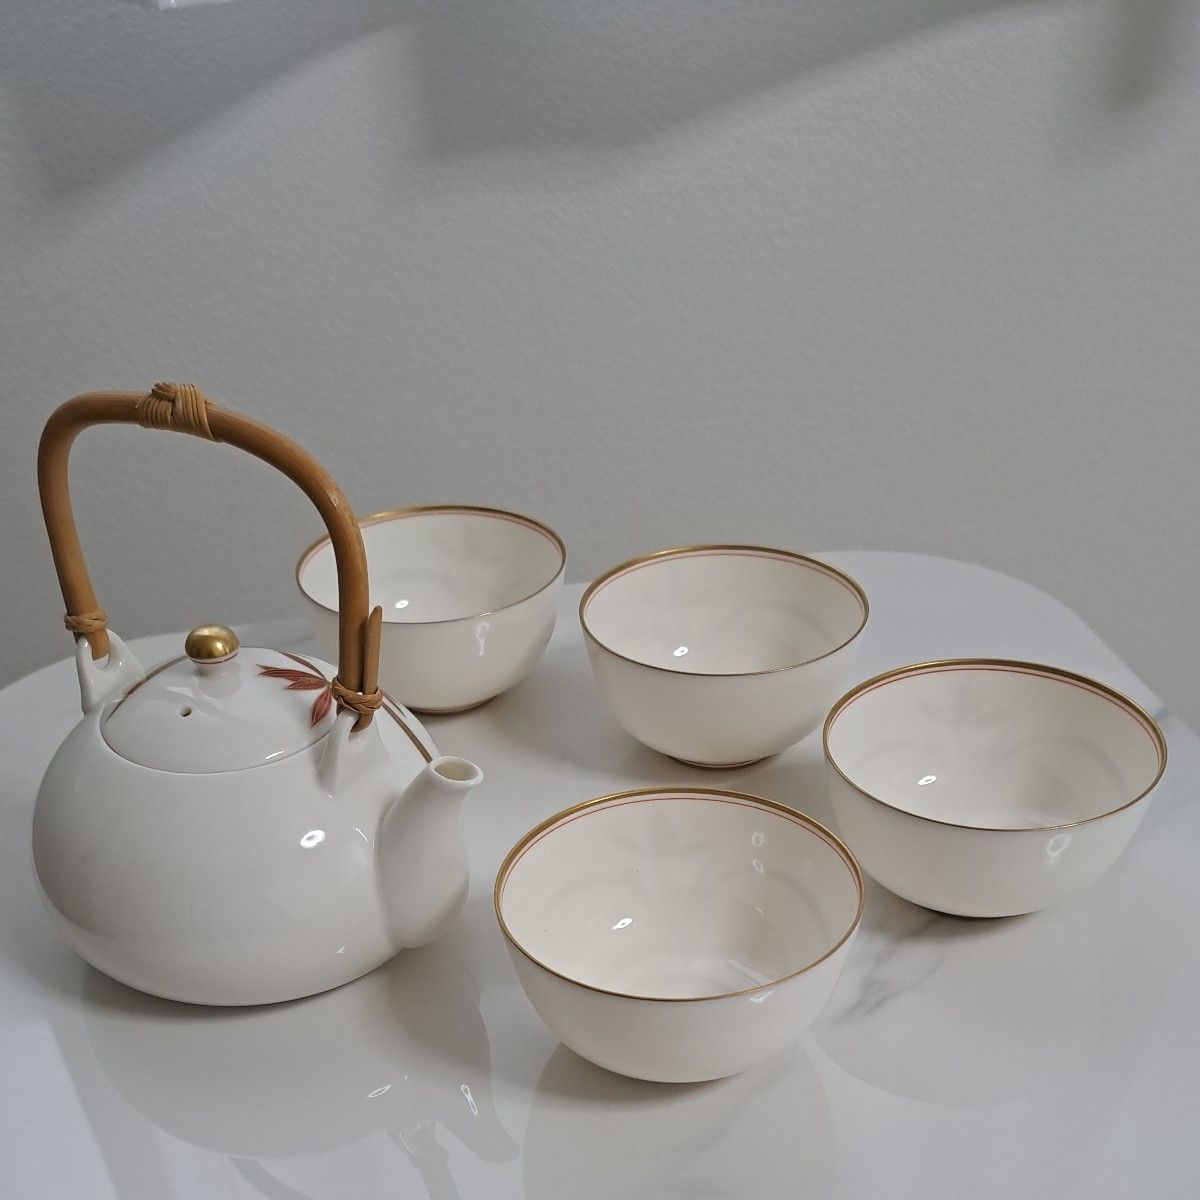 香蘭社 茶器揃 茶器 煎茶道具 和食器 茶器セット 急須 金彩